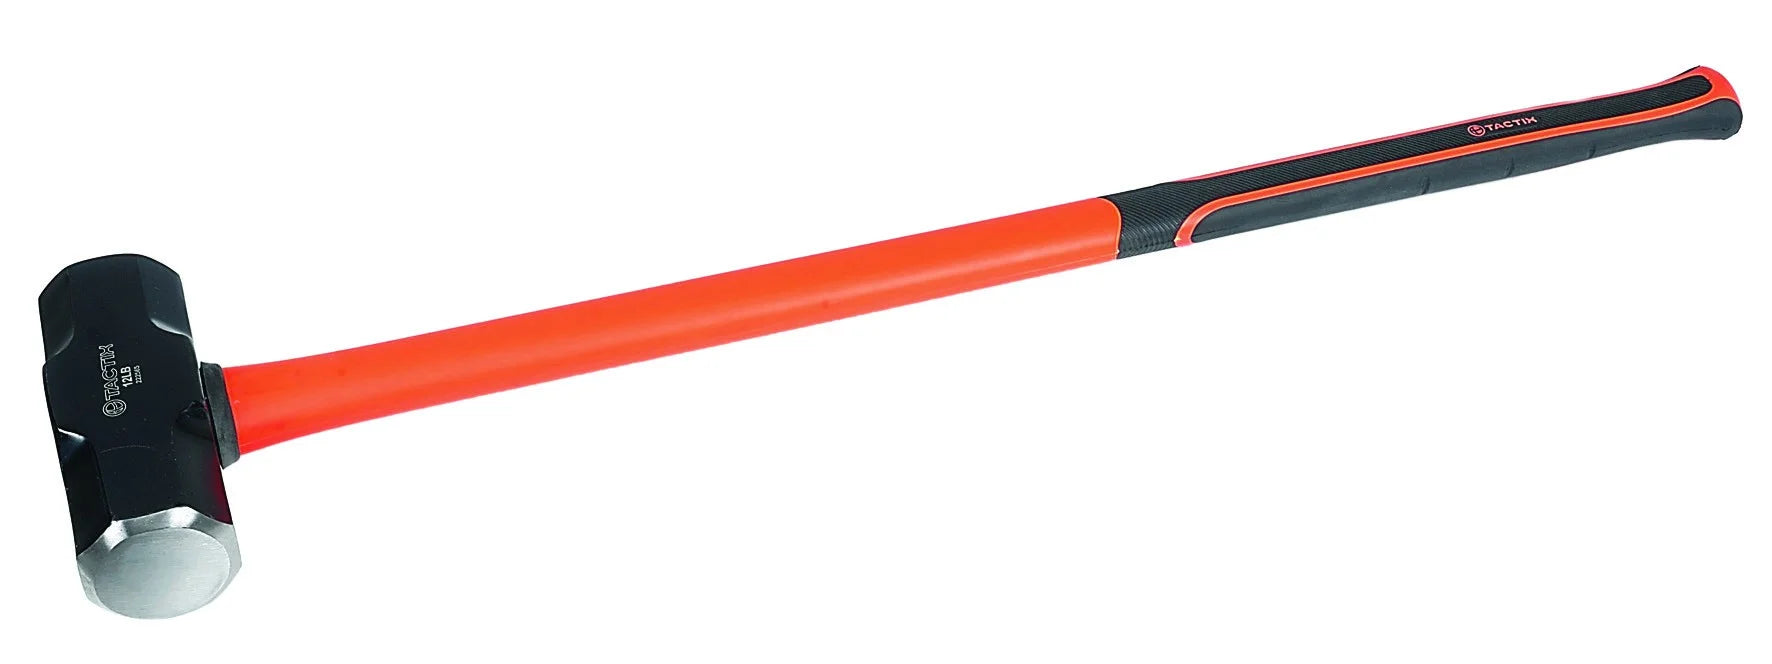 8LB H/D Tactix Sledge Hammer